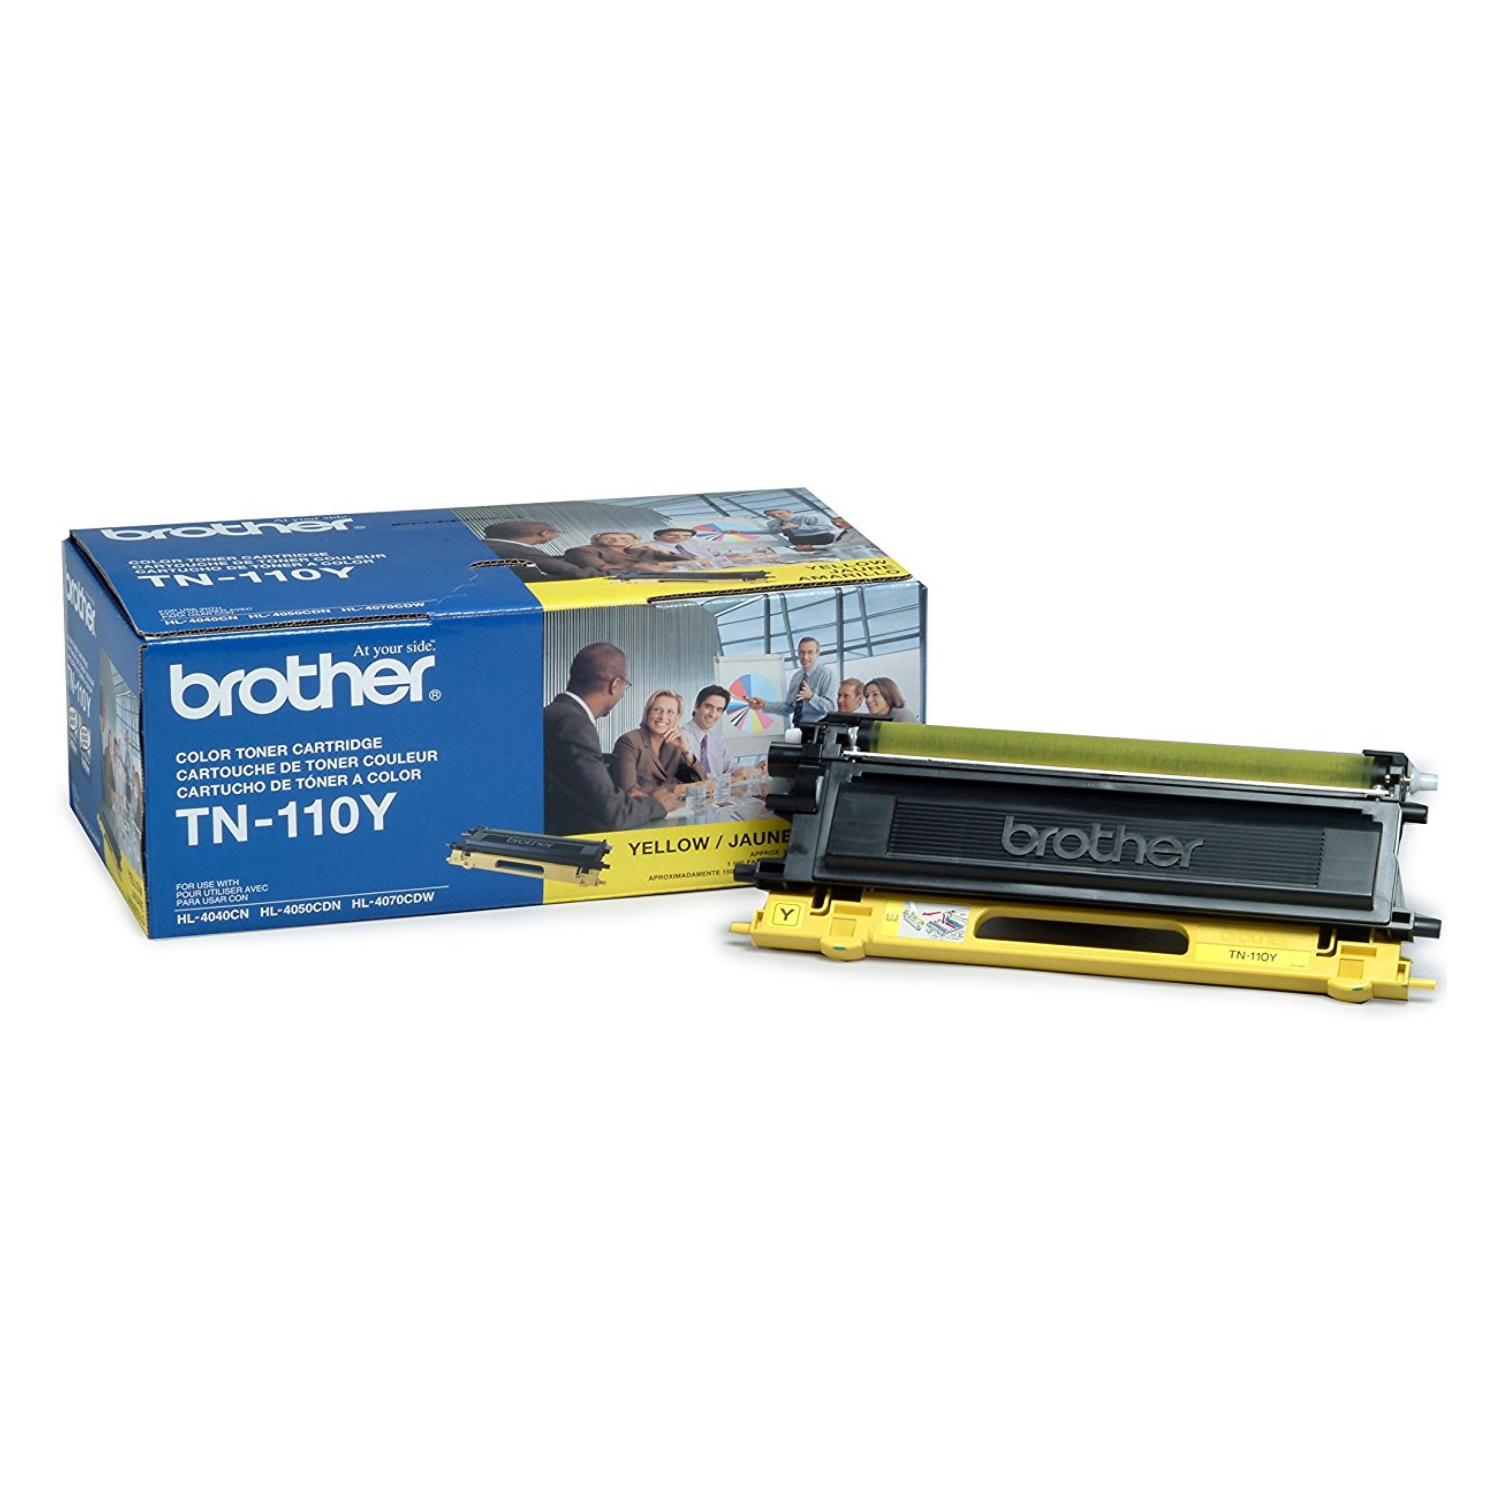 Brother TN-110Y, Yellow Original Toner Cartridge, For HL-4040CNHL-4070CDW, 9045CDN, 9840CDW